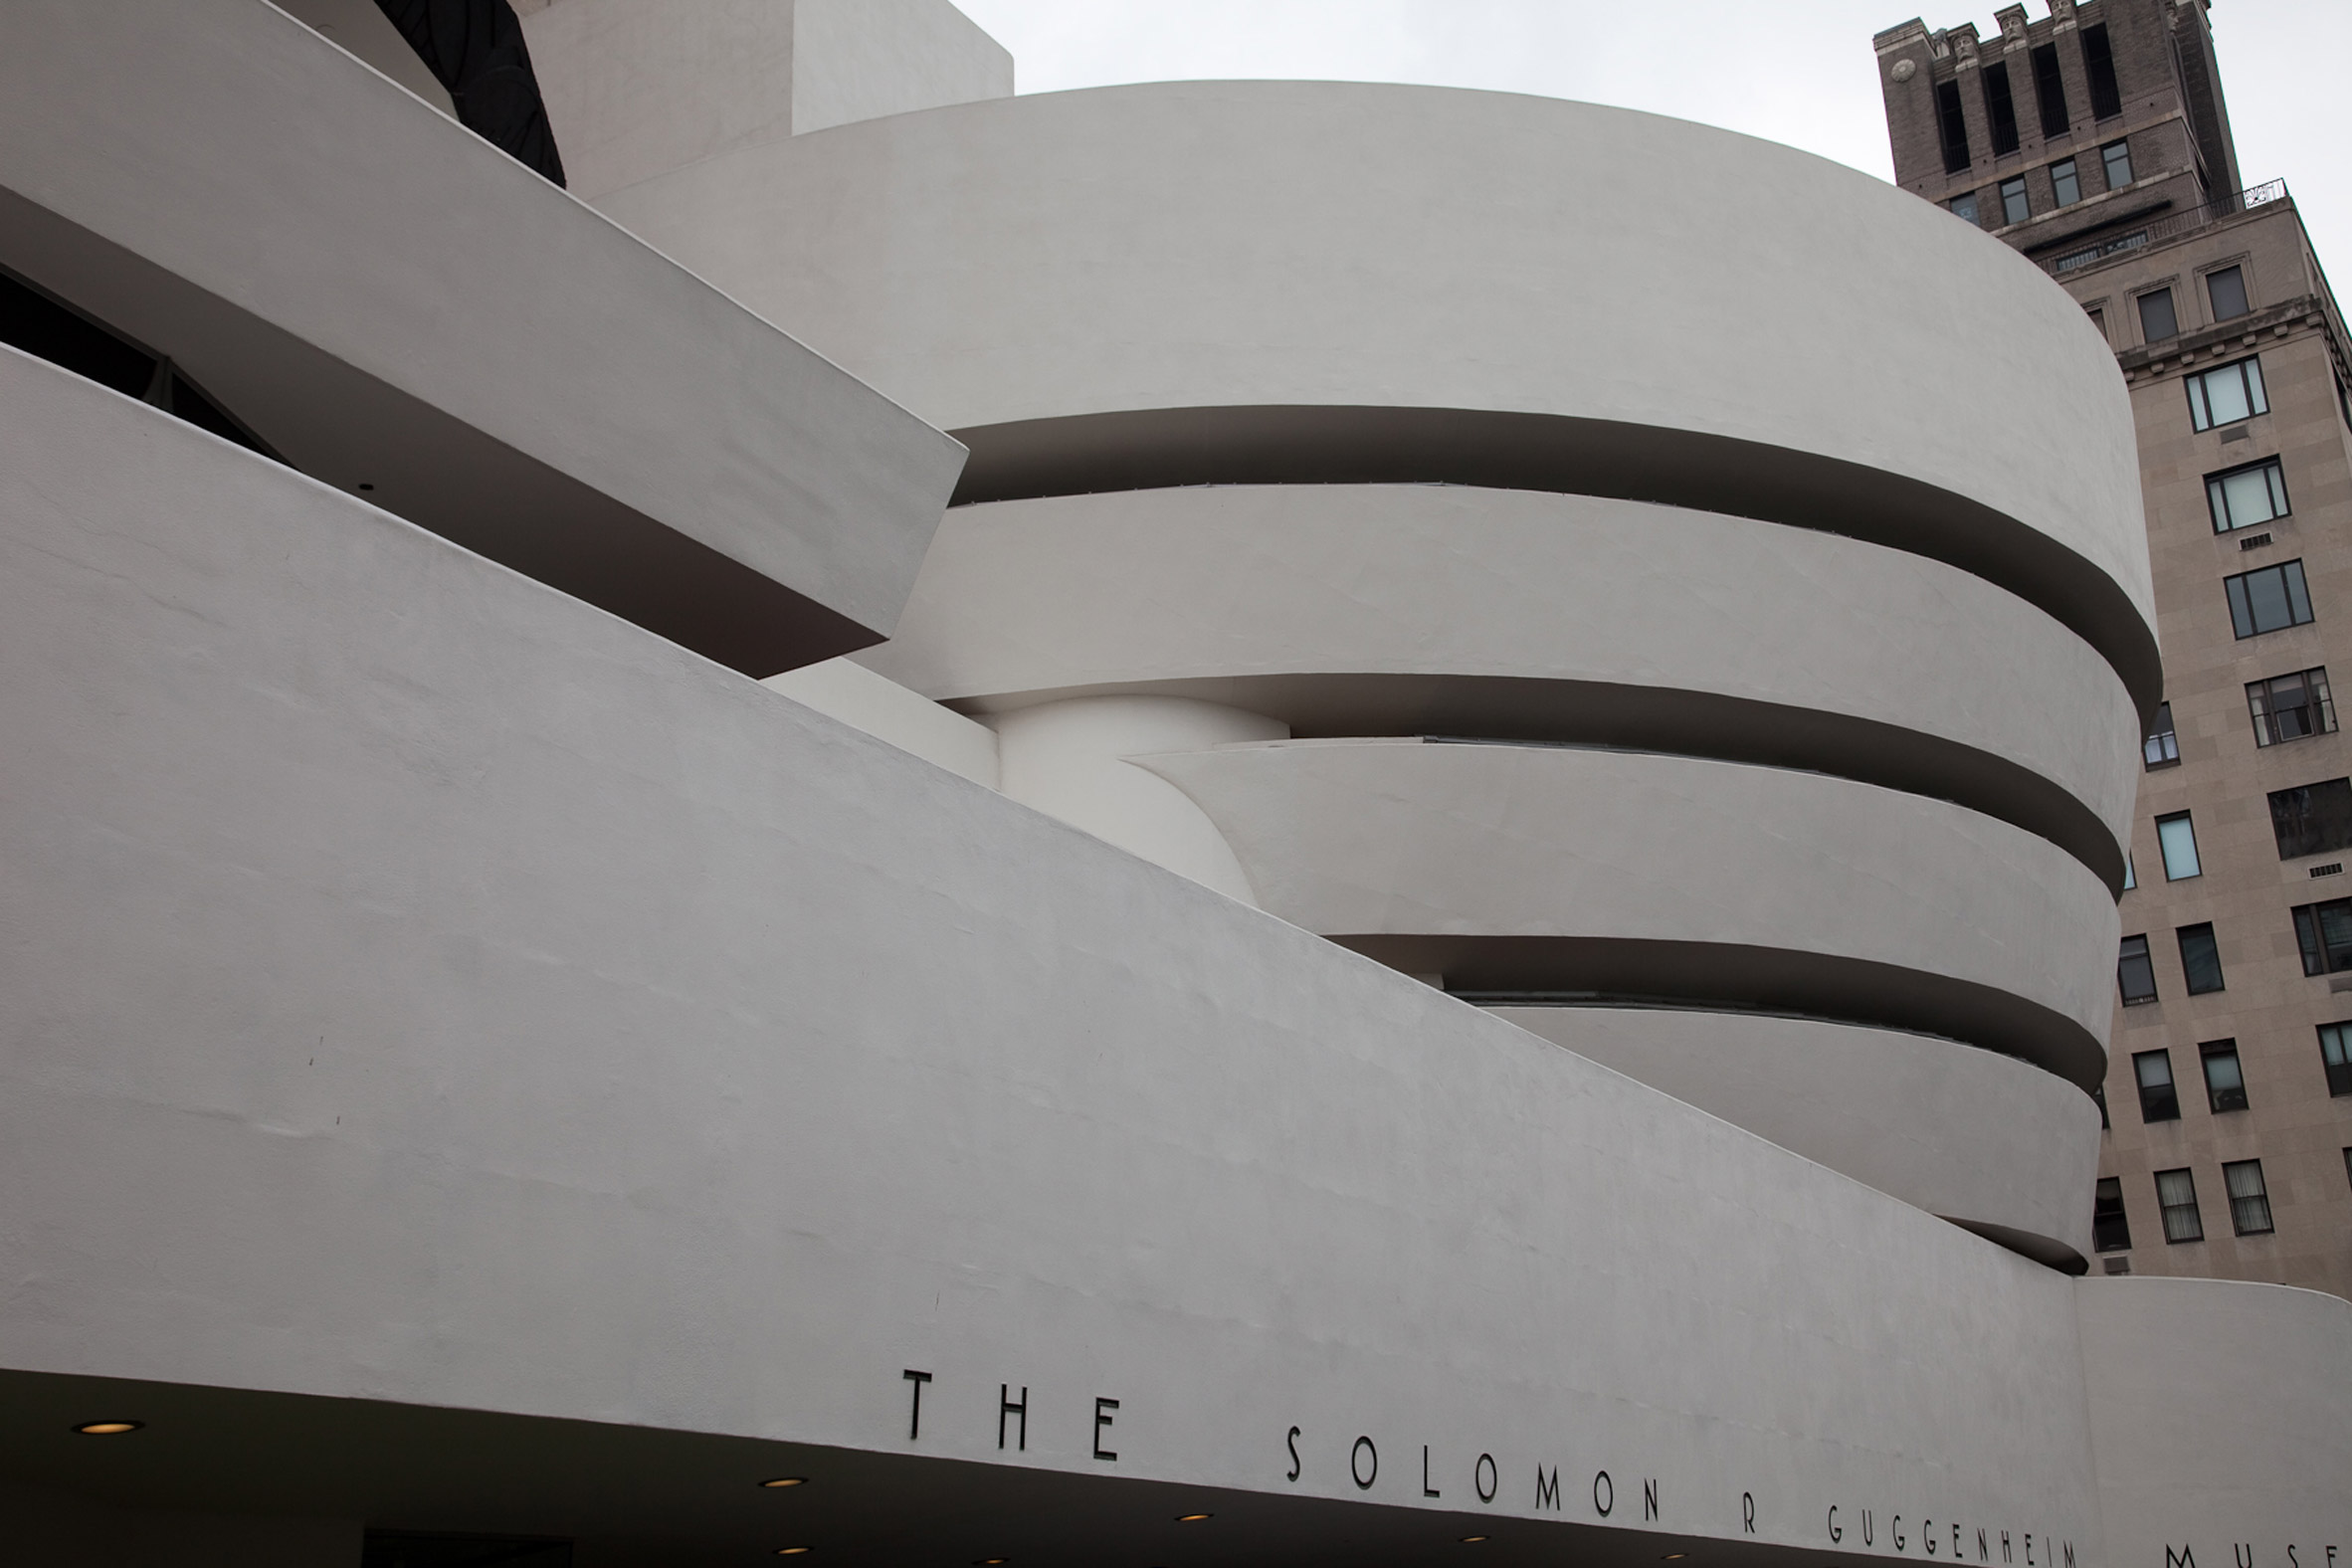 Guggenheim by Frank Lloyd Wright